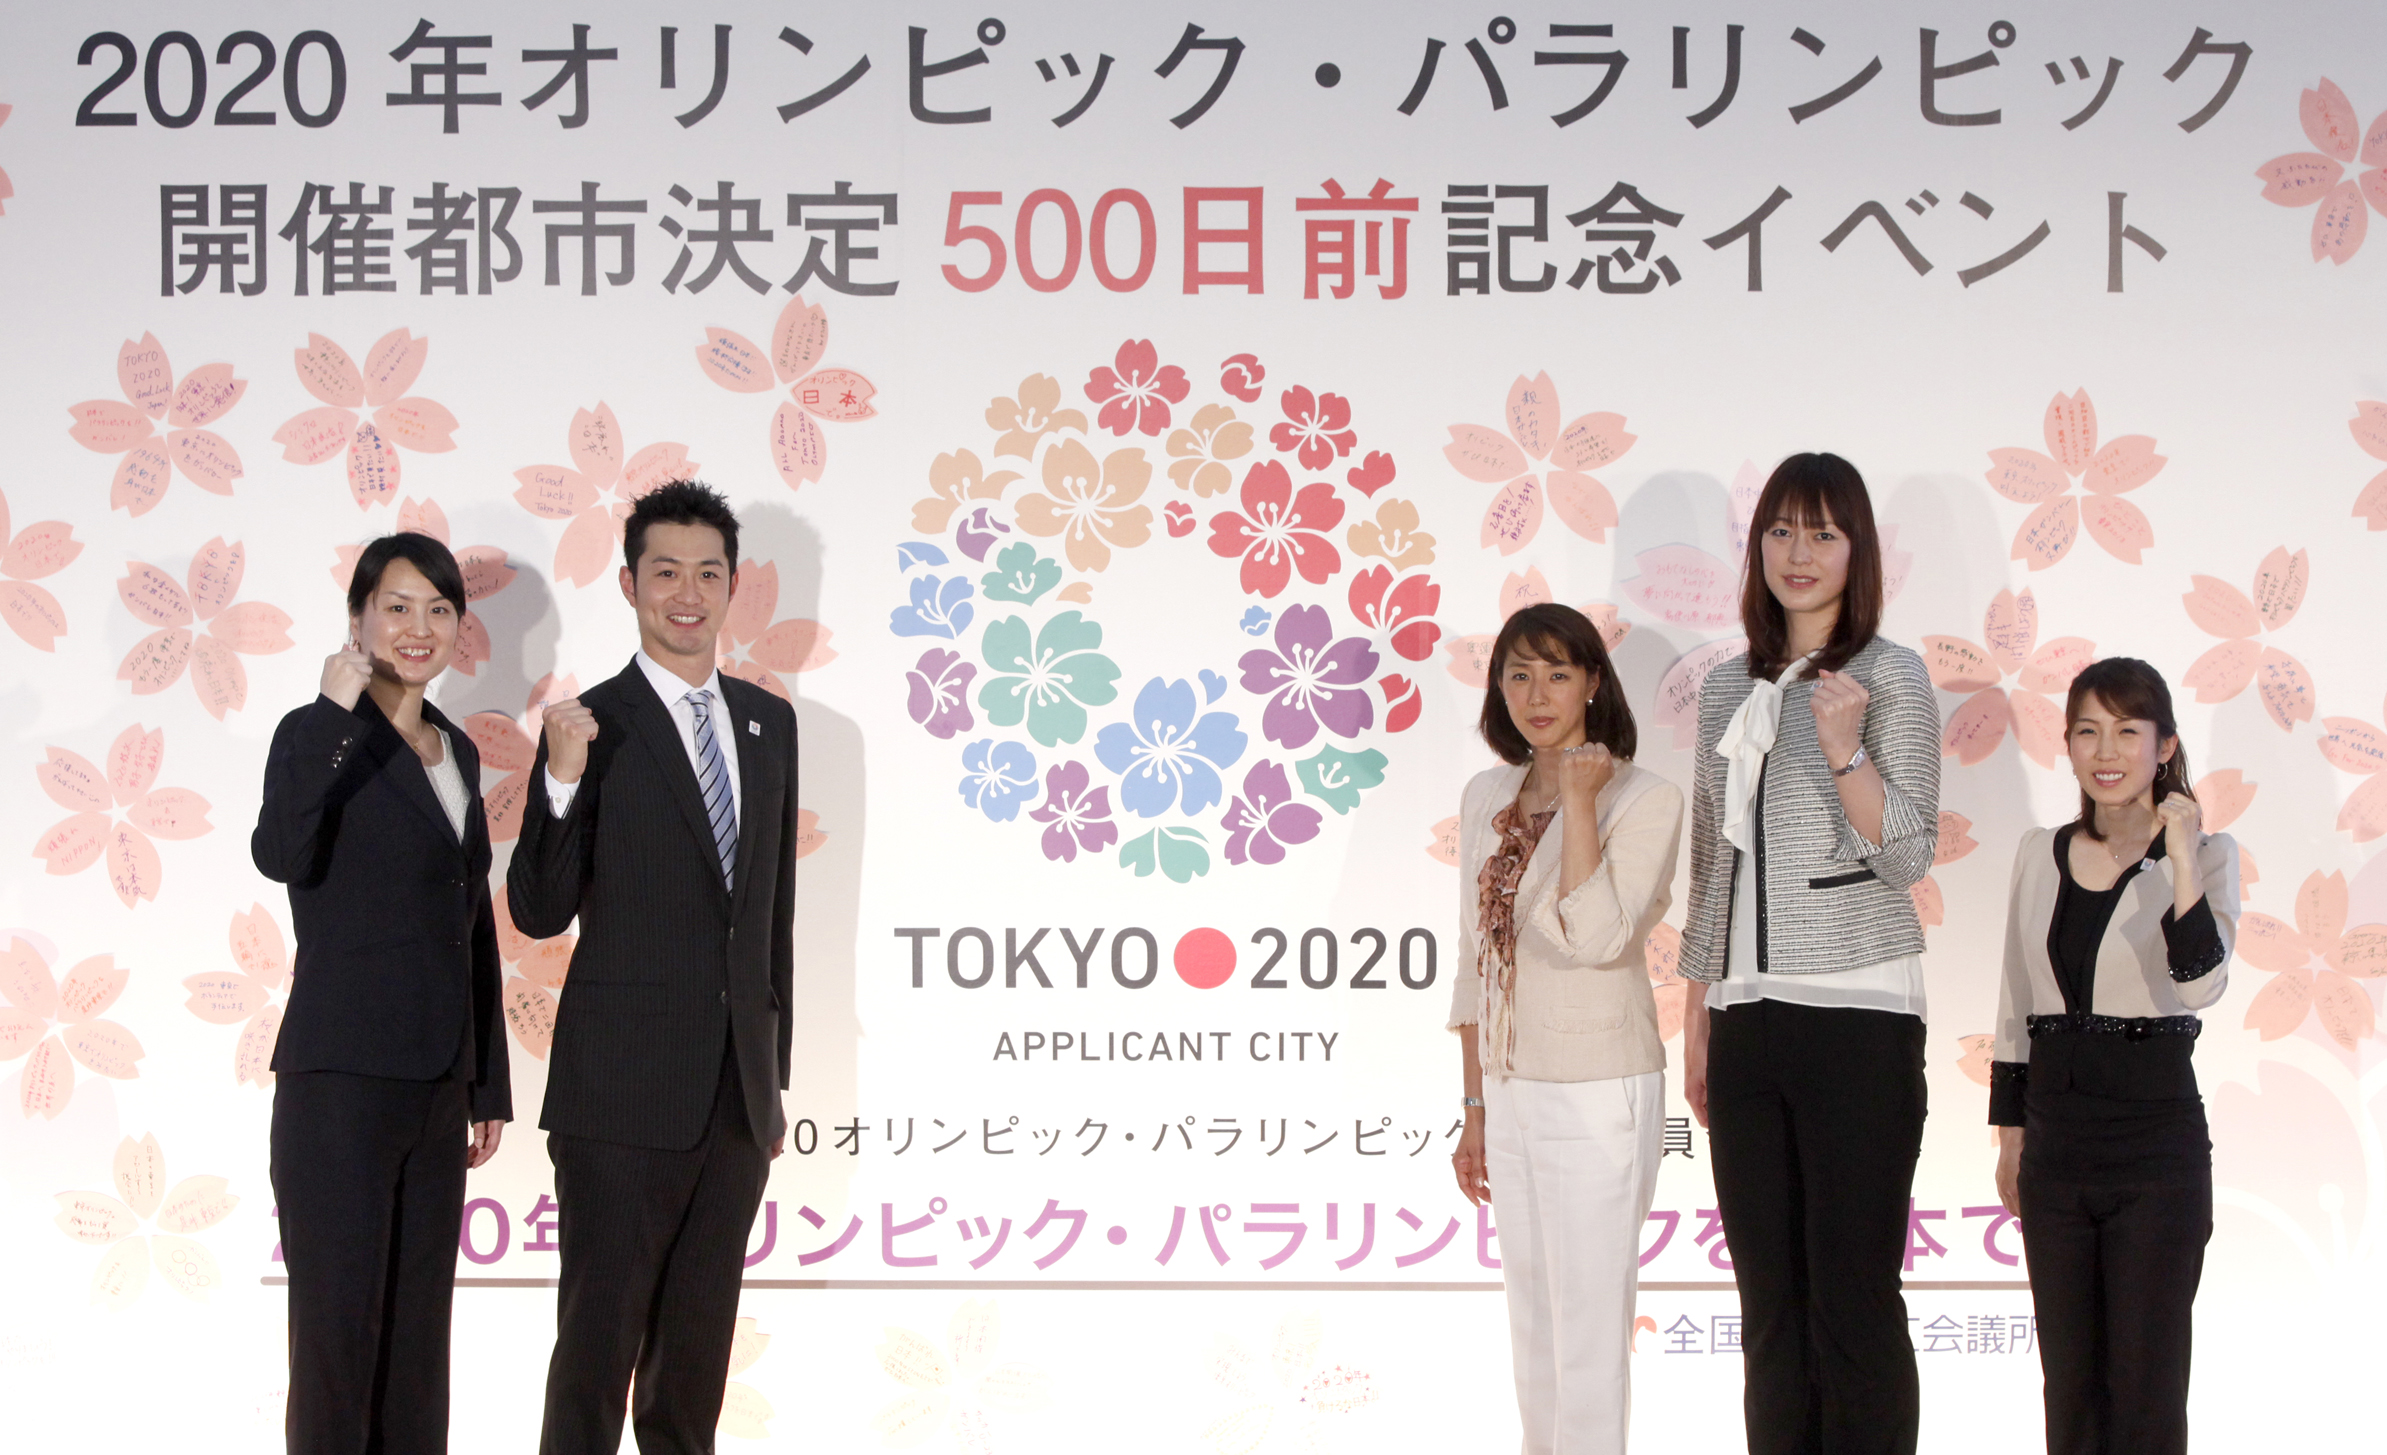 Tokyo 2020_ambassadors_at_launch_of_new_skyscraper